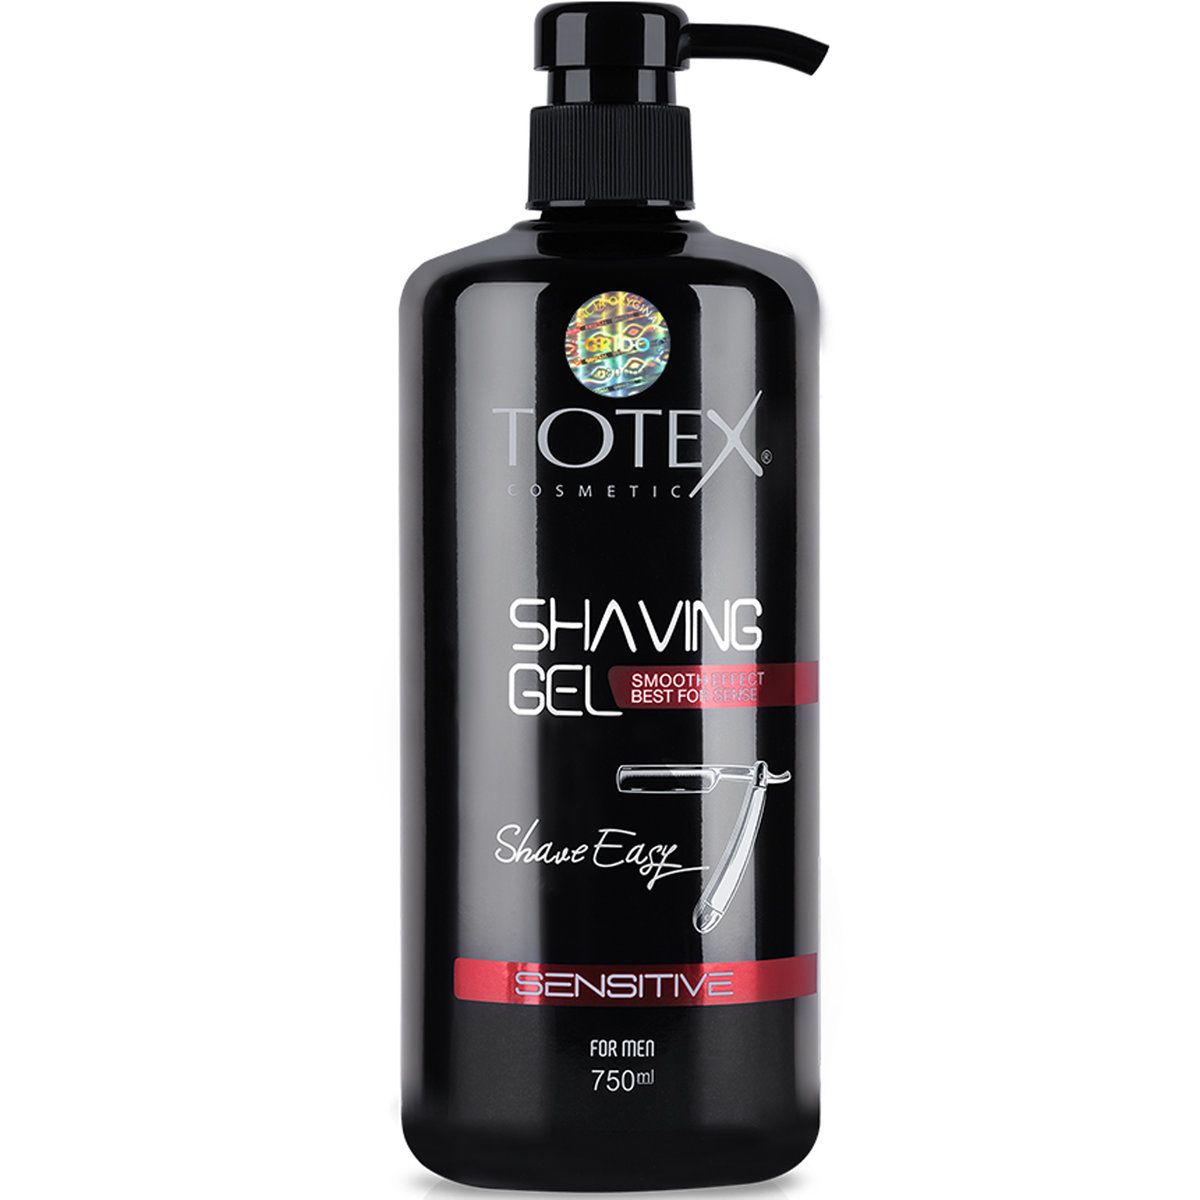 Totex Shaving Gel Sensitive For Men, Żel Do Golenia Skóry Wrażliwej, 750ml